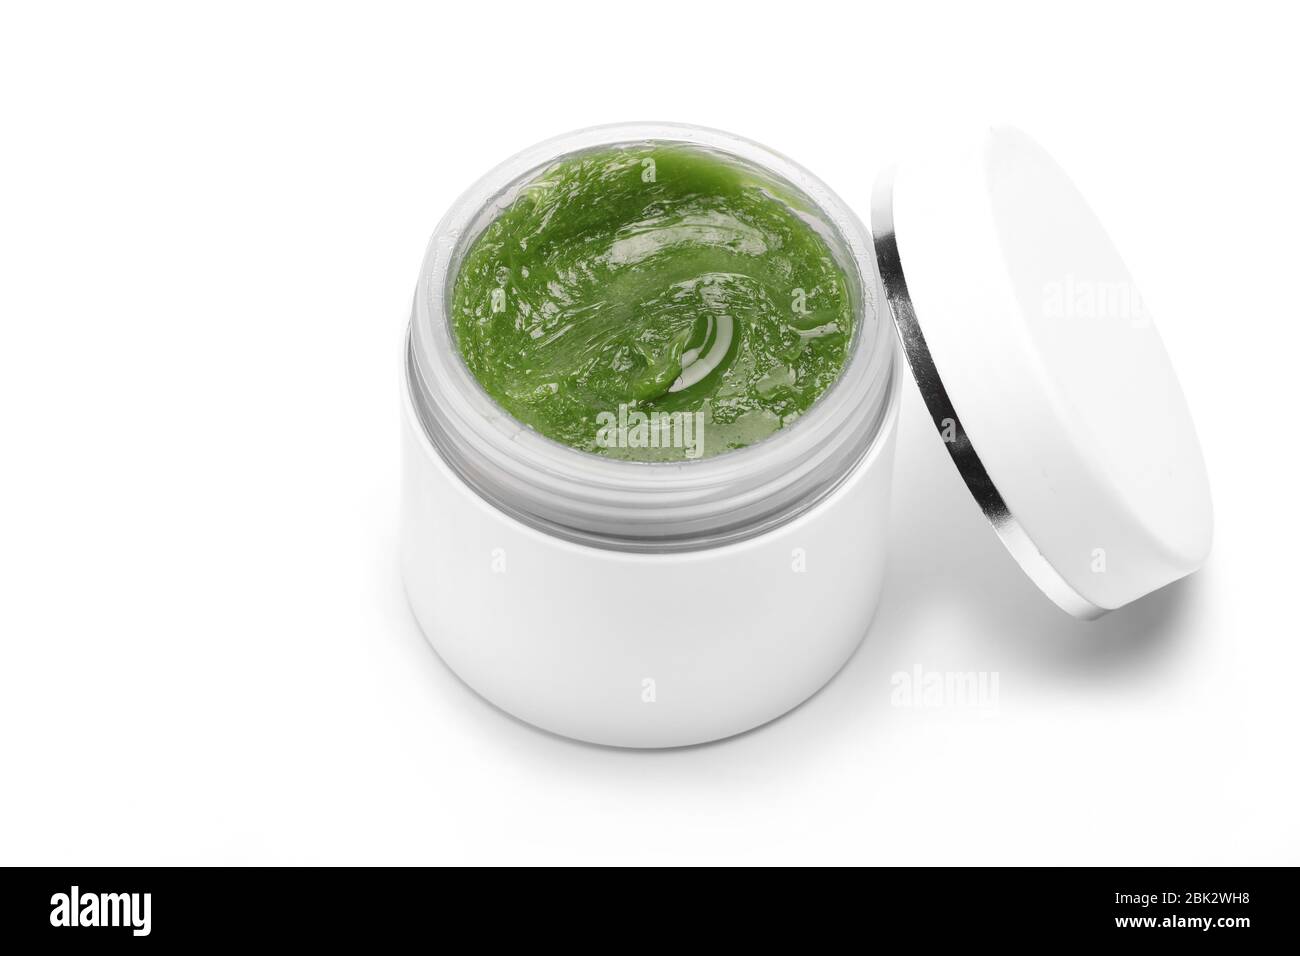 Kosmetik natürliche Gesicht und Körper grüne Creme in weißen Behälter, Glas  isoliert auf einem weißen Hintergrund. Copy space Stockfotografie - Alamy